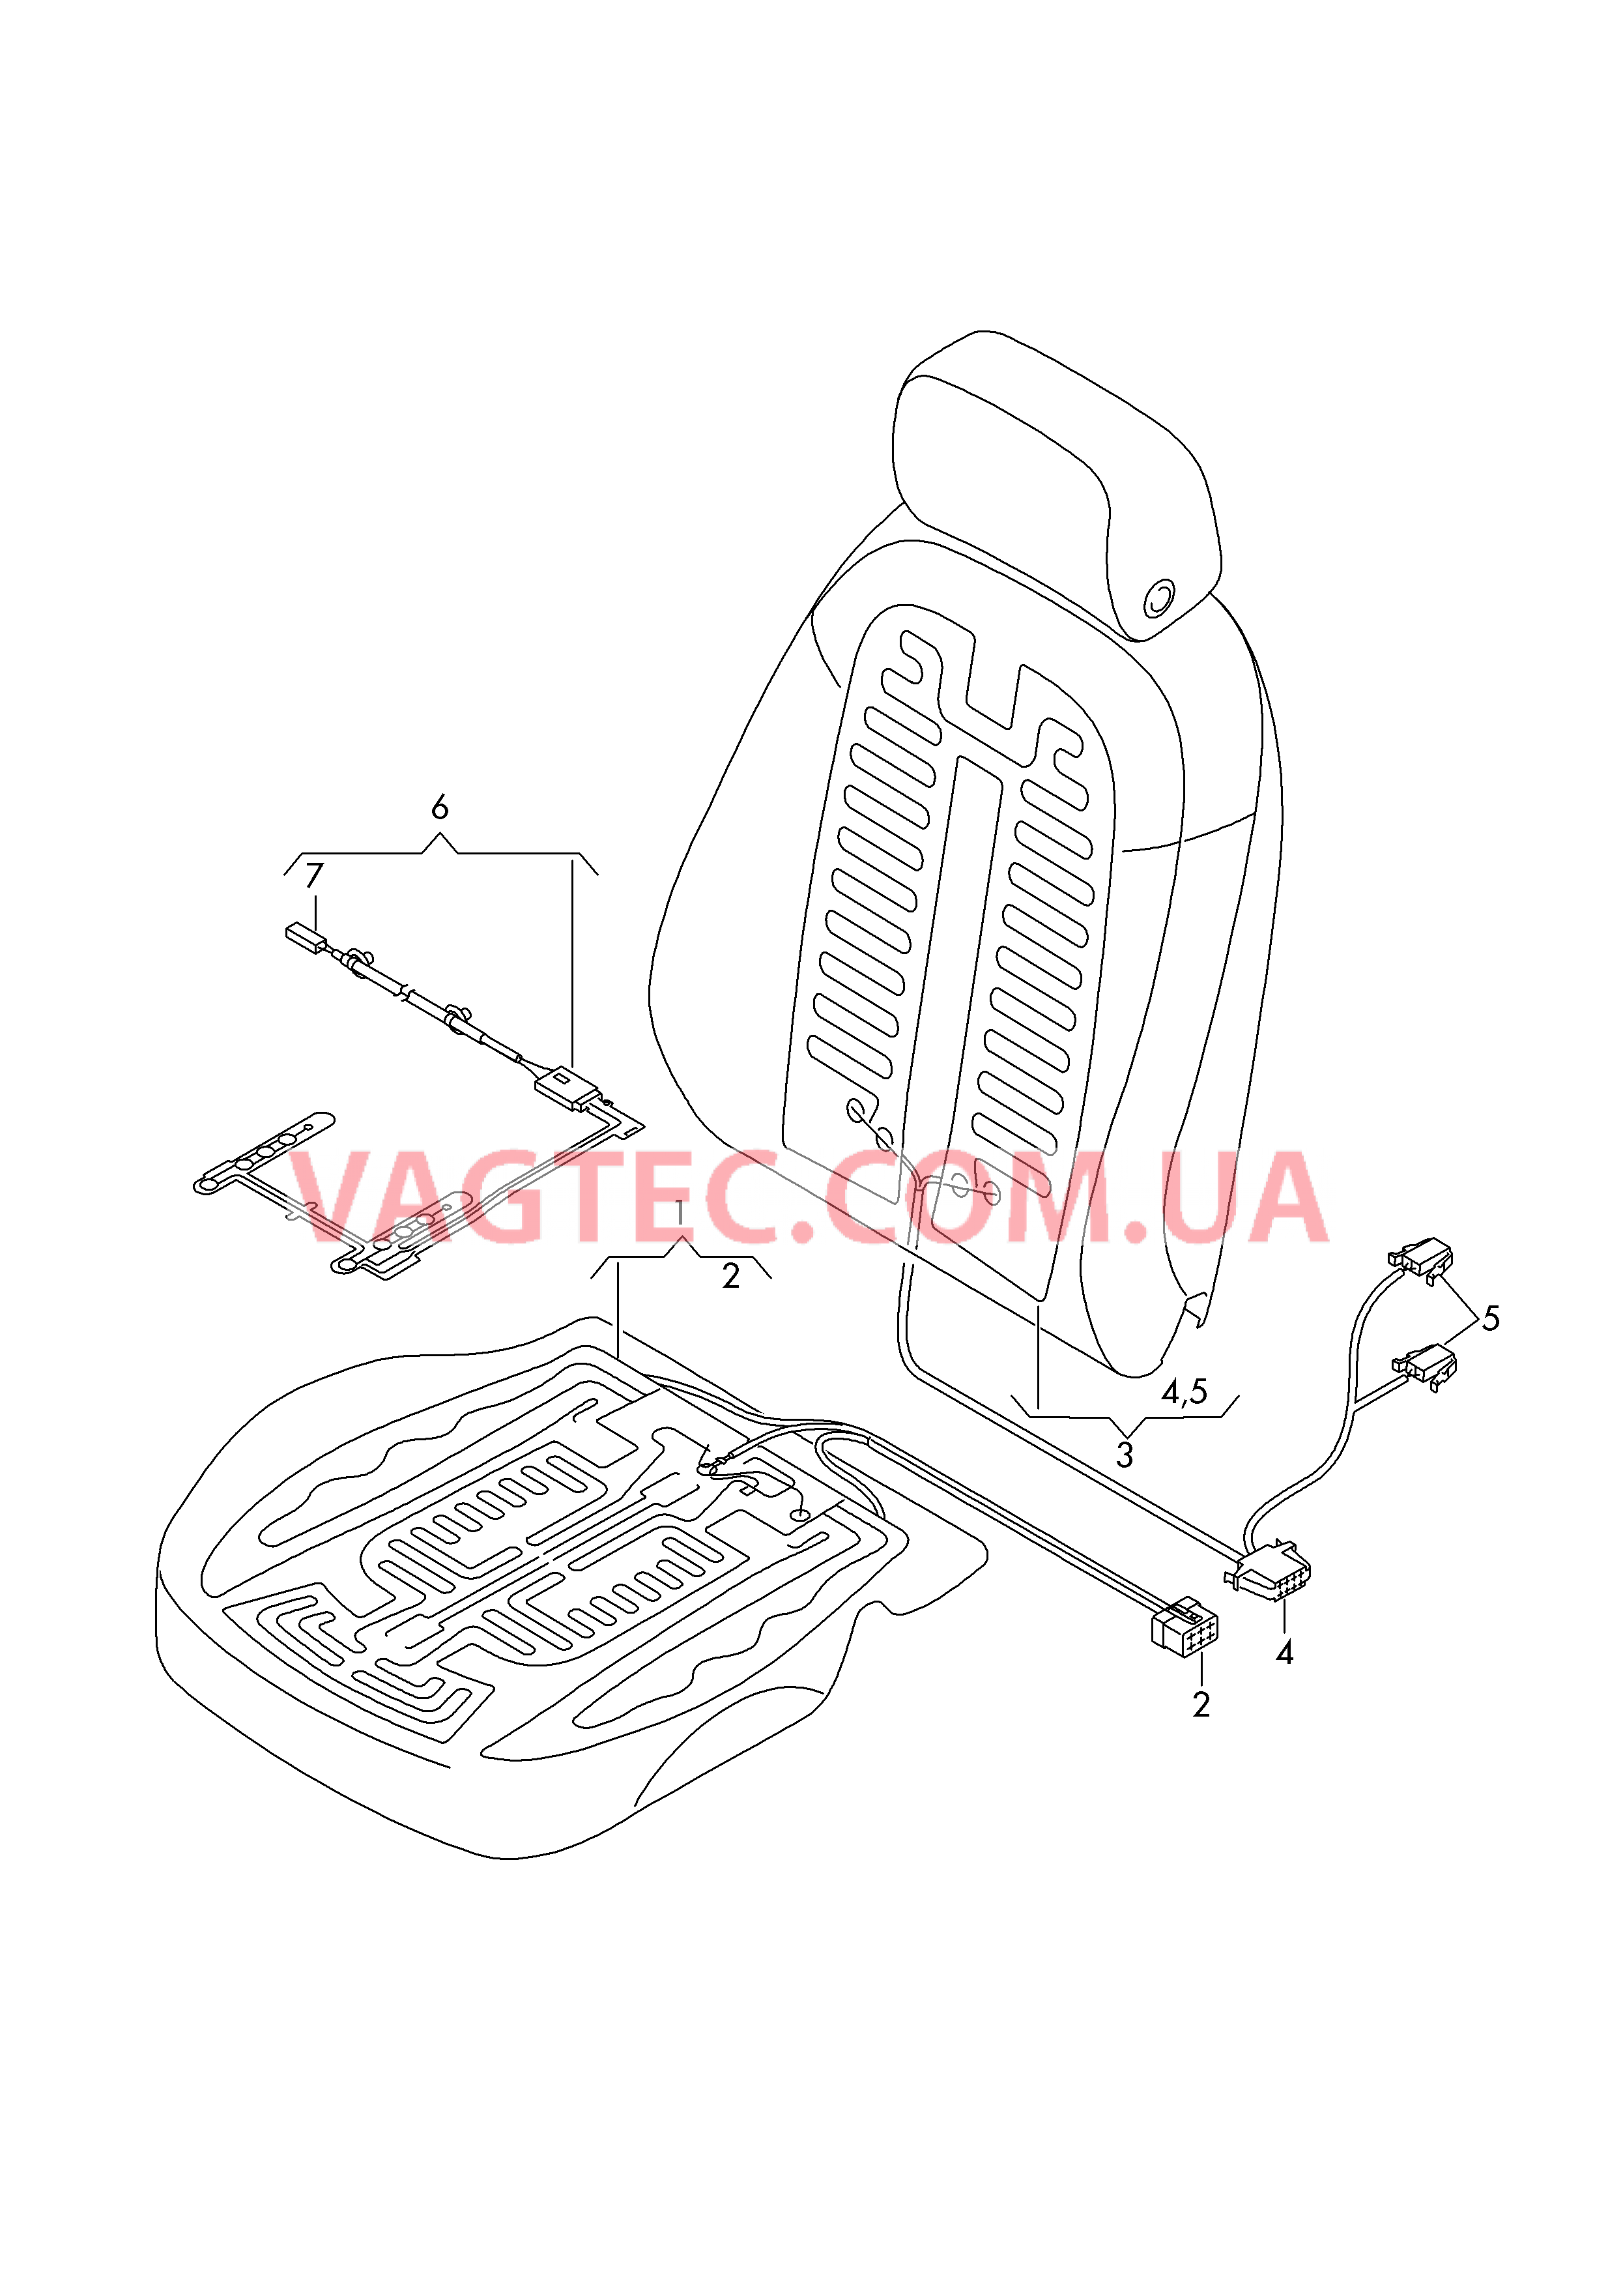 Нагревательный элемент спинки и подушки сиденья  Вставка распознавания занятости сиденья  для AUDI A6 2018